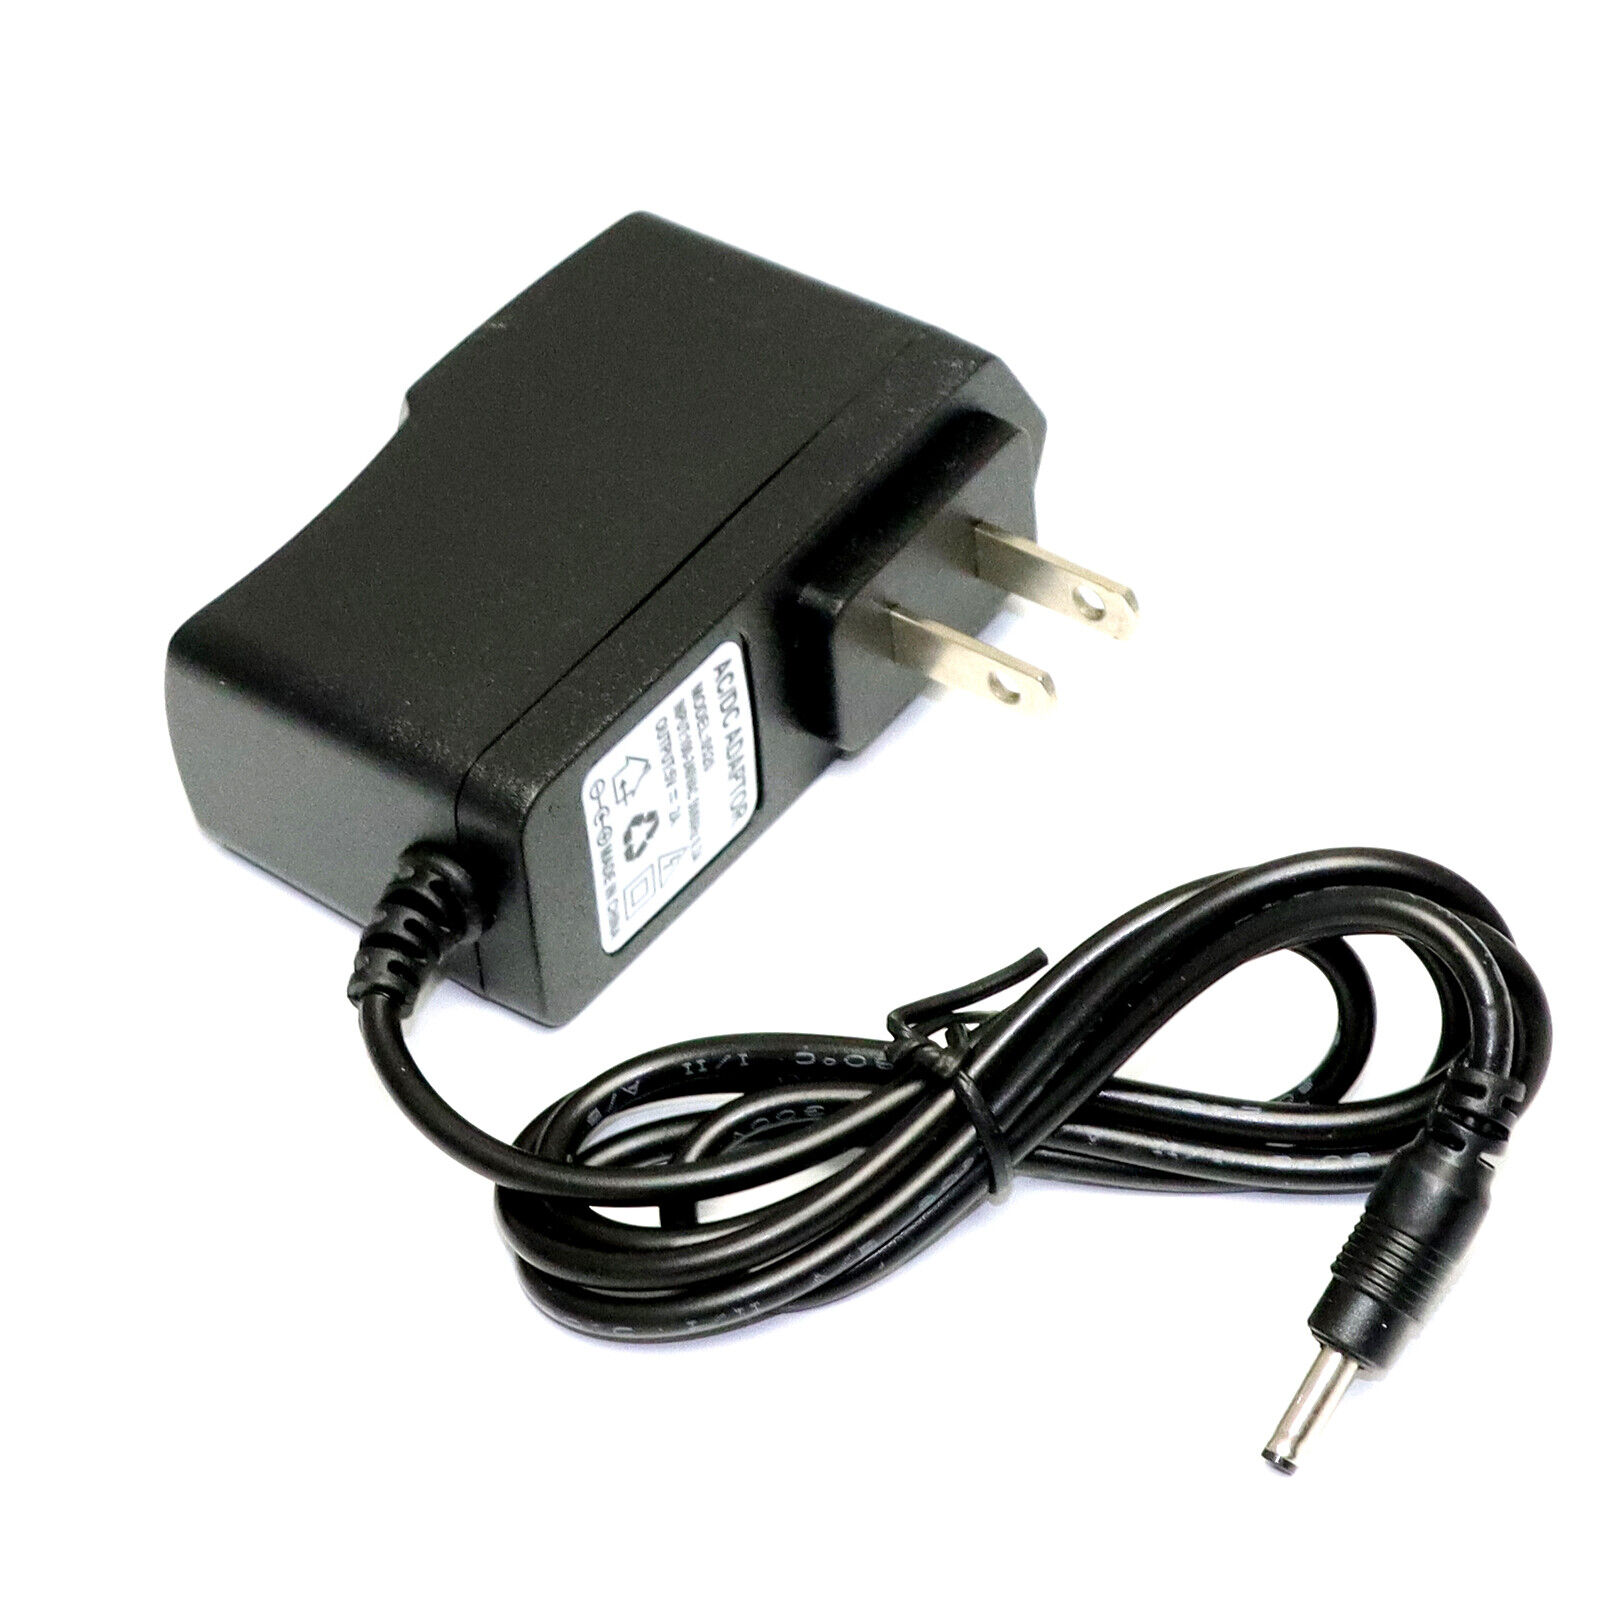 AC 100-240V to 5V 2A 10W Power Adapter for USB Hubs 3.5mm x 1.35mm